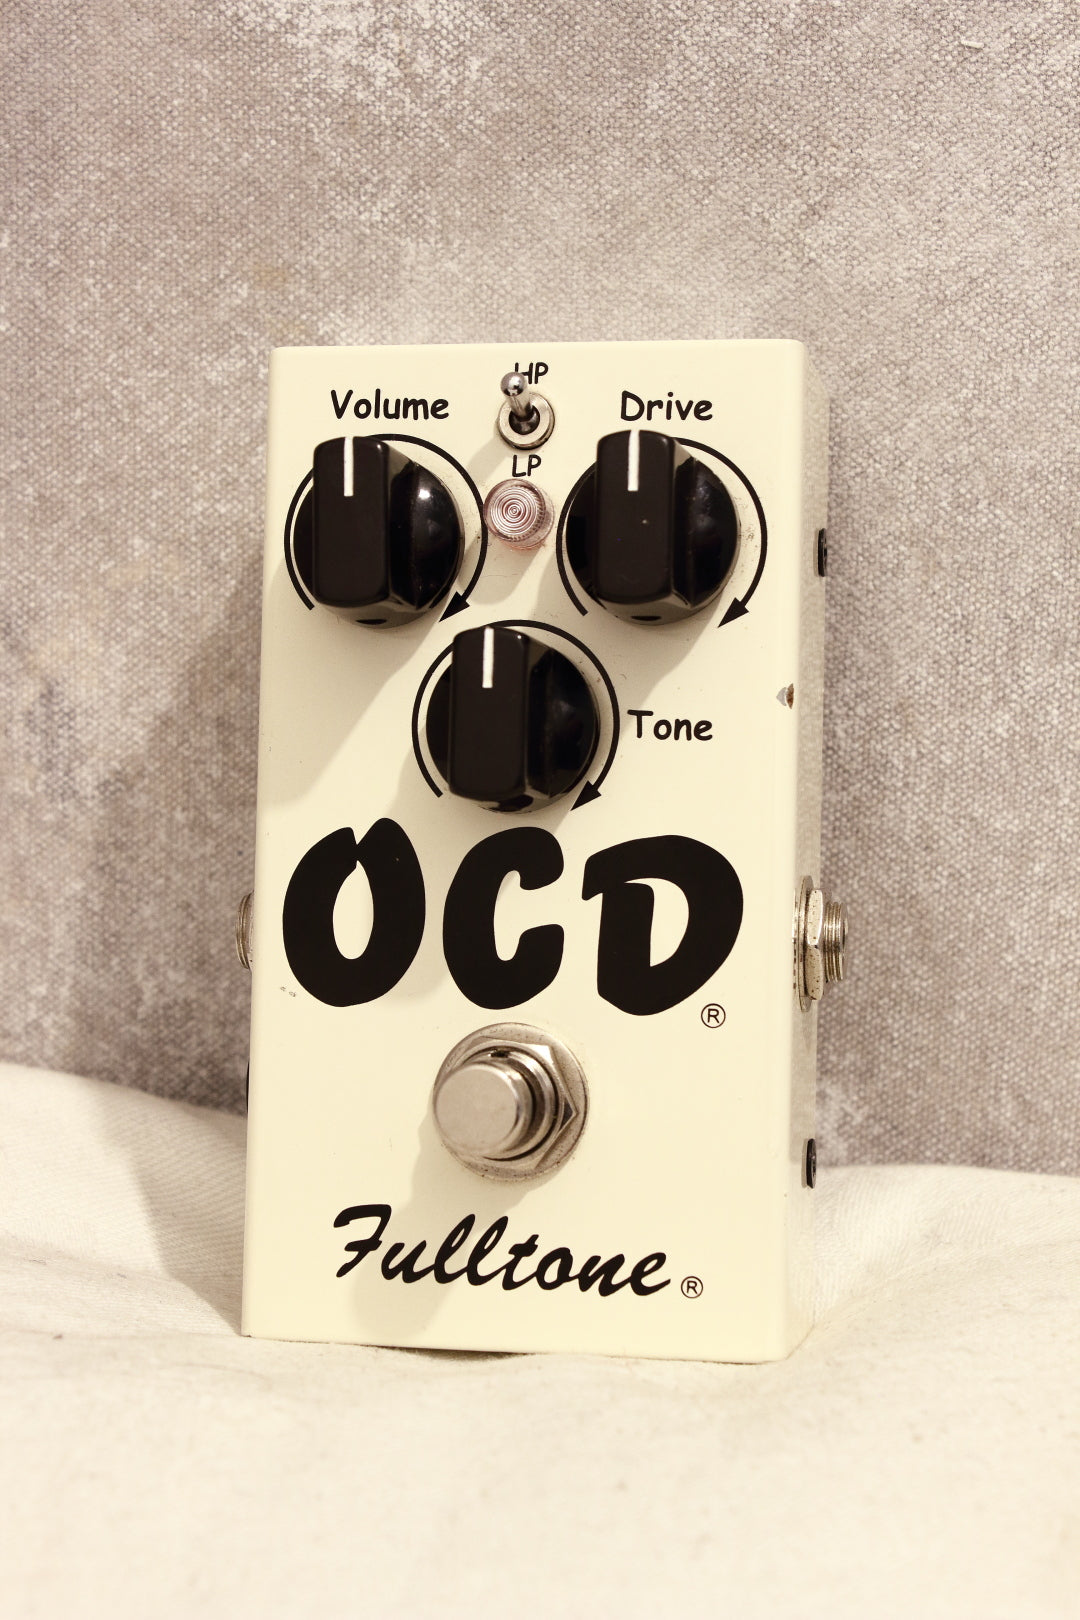 Fulltone OCD v1.7 Drive Pedal – Topshelf Instruments